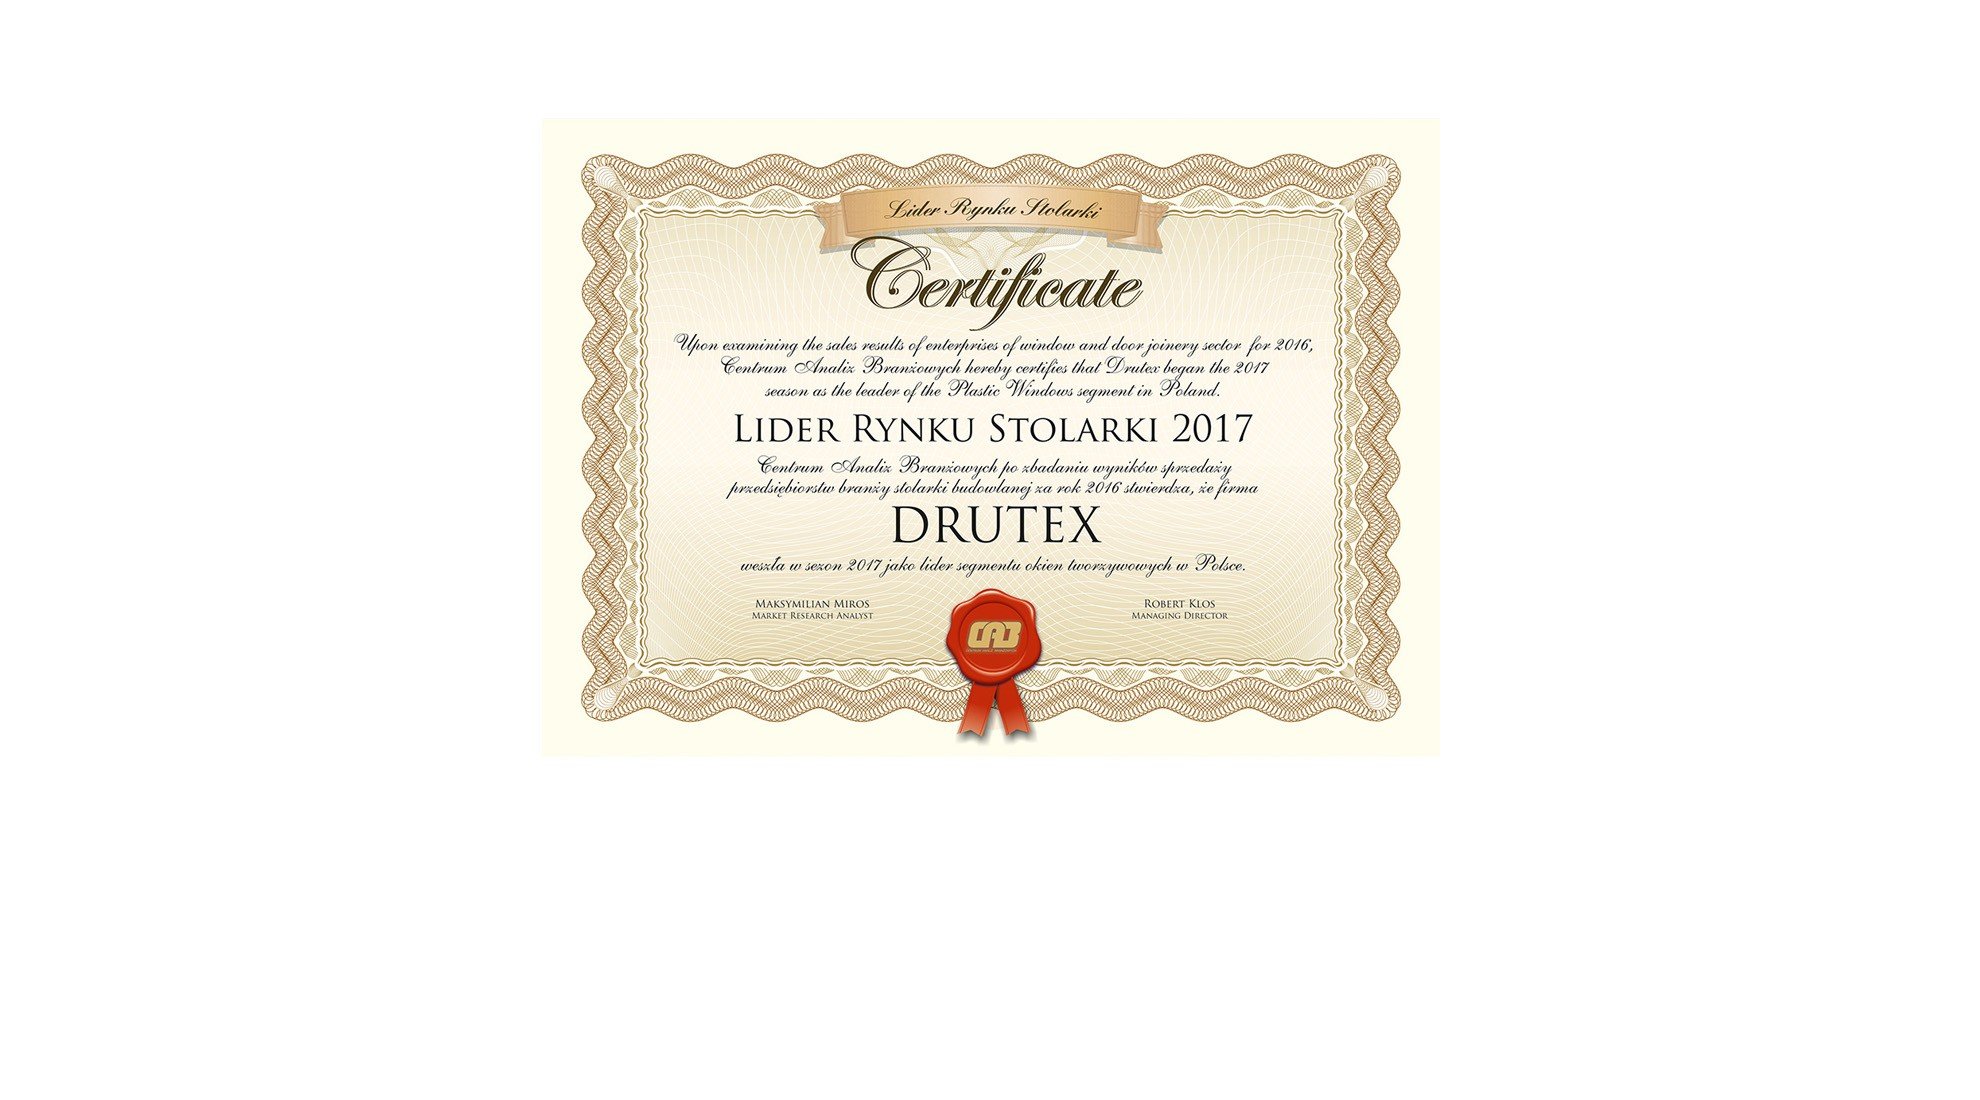 Drutex wzmacnia pozycję lidera rynku w Polsce!